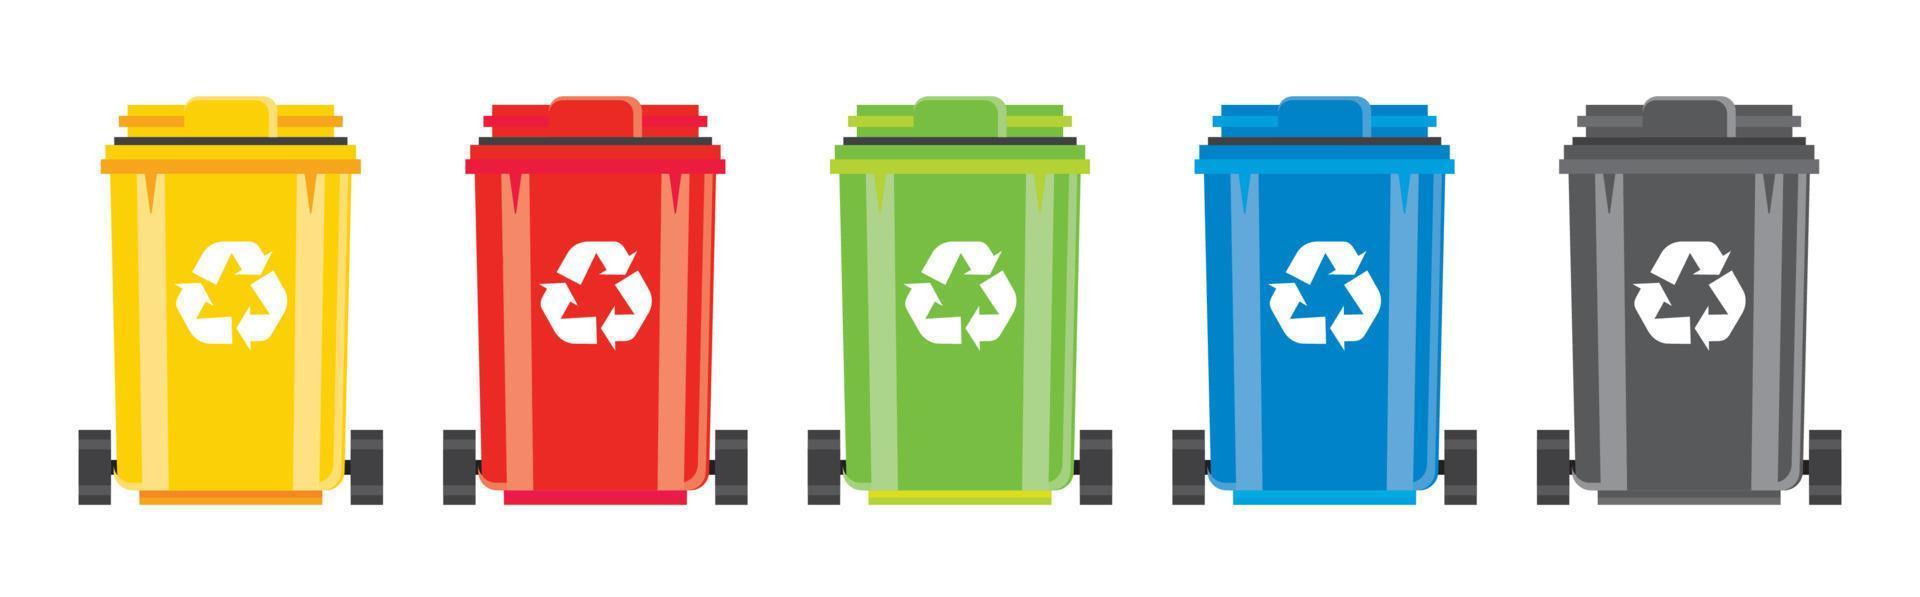 conjunto de papeleras de reciclaje con símbolo de reciclaje aislado sobre fondo blanco. vector